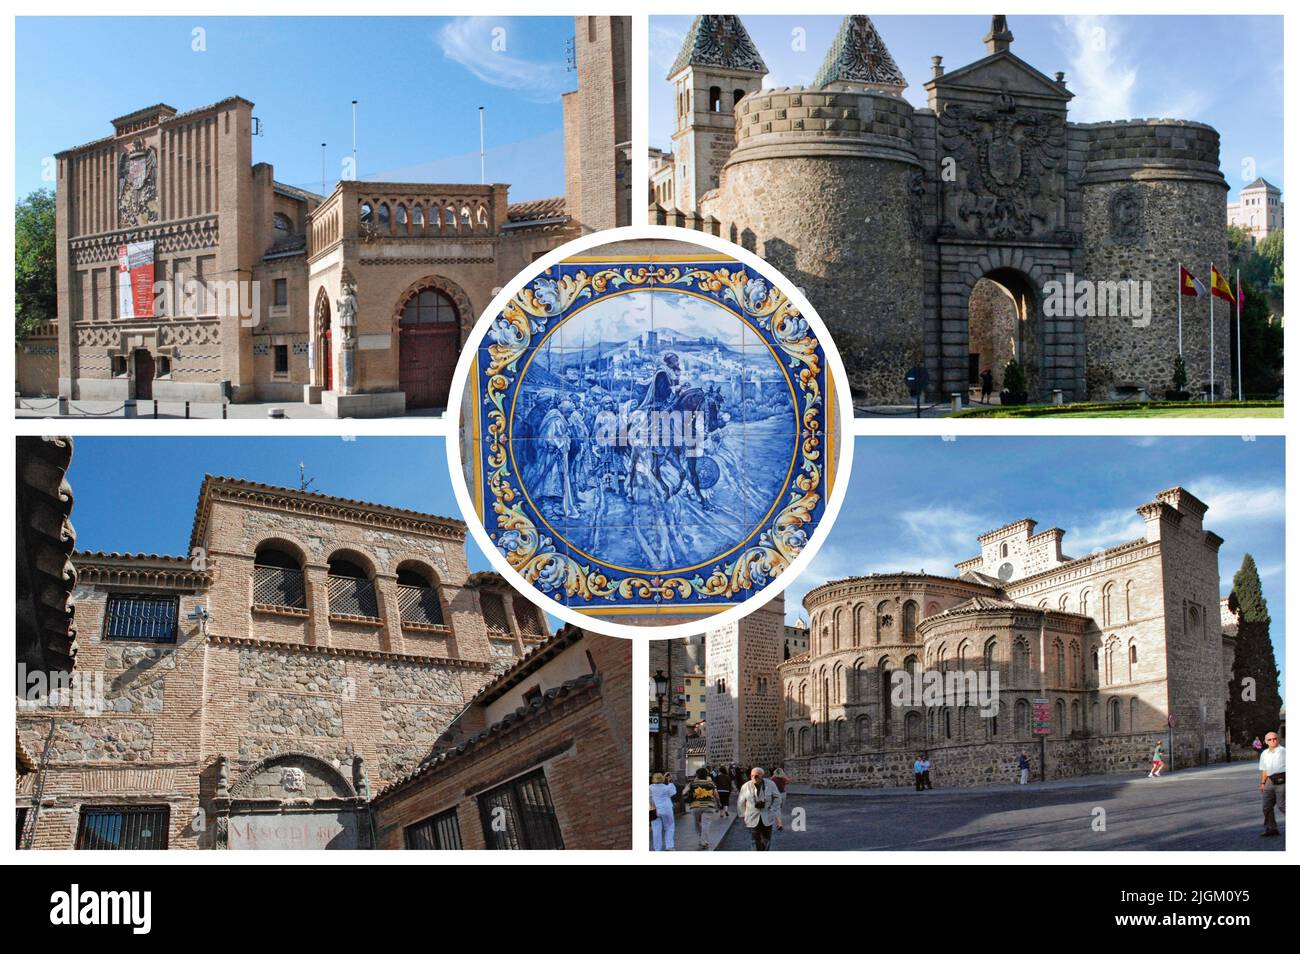 Tolède (Espagne) est une ancienne ville, capitale de Castille-la Mancha, célèbre pour ses monuments médiévaux arabes, juifs et chrétiens Banque D'Images